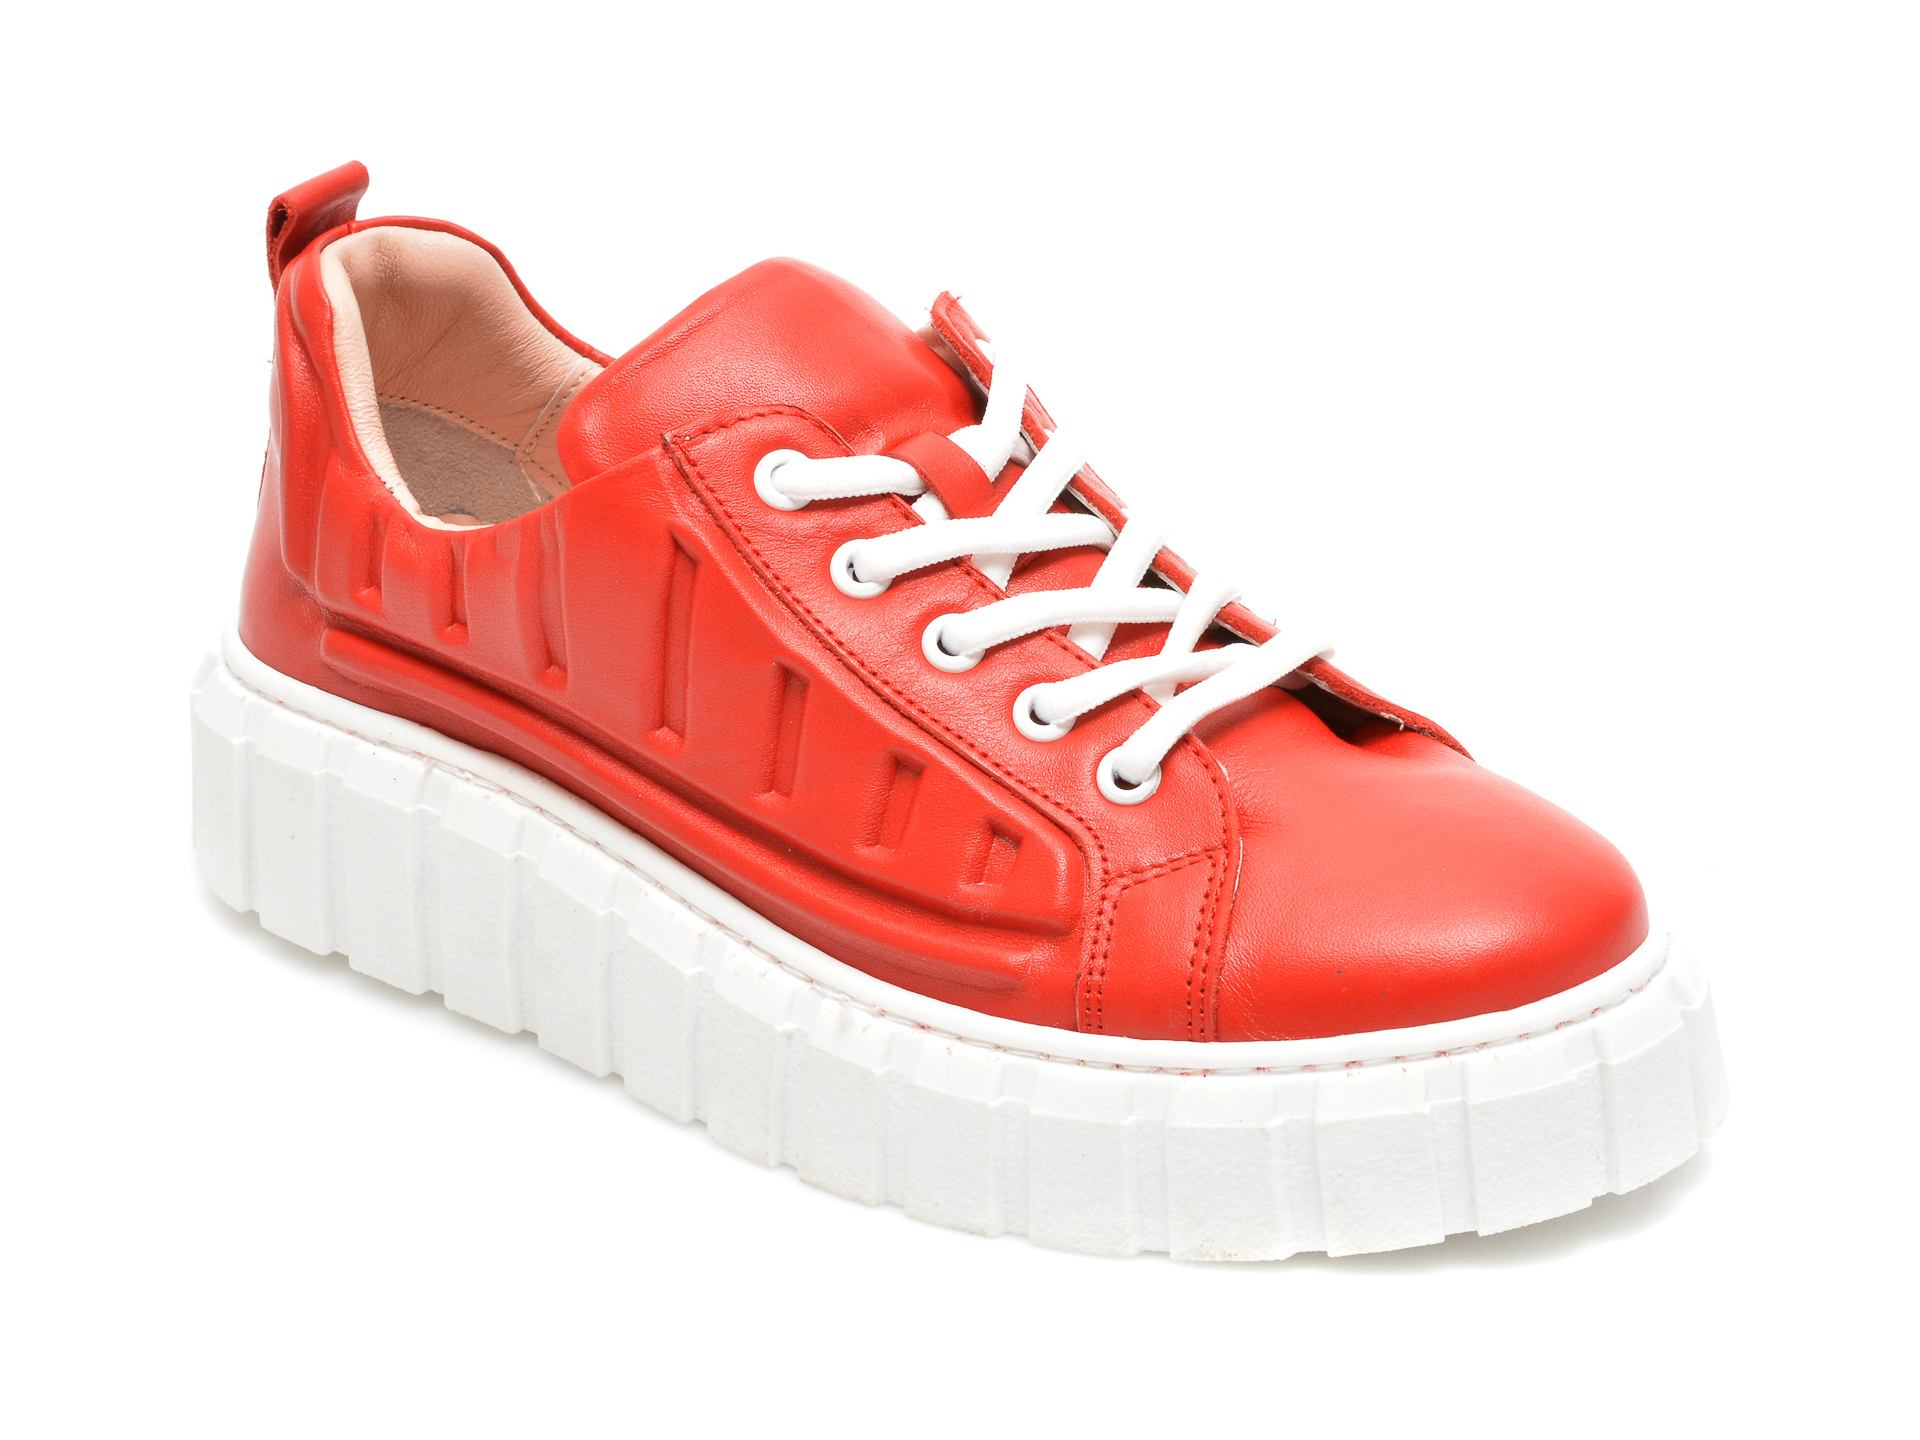 Pantofi FLAVIA PASSINI rosii, 922502, din piele naturala Flavia Passini imagine noua